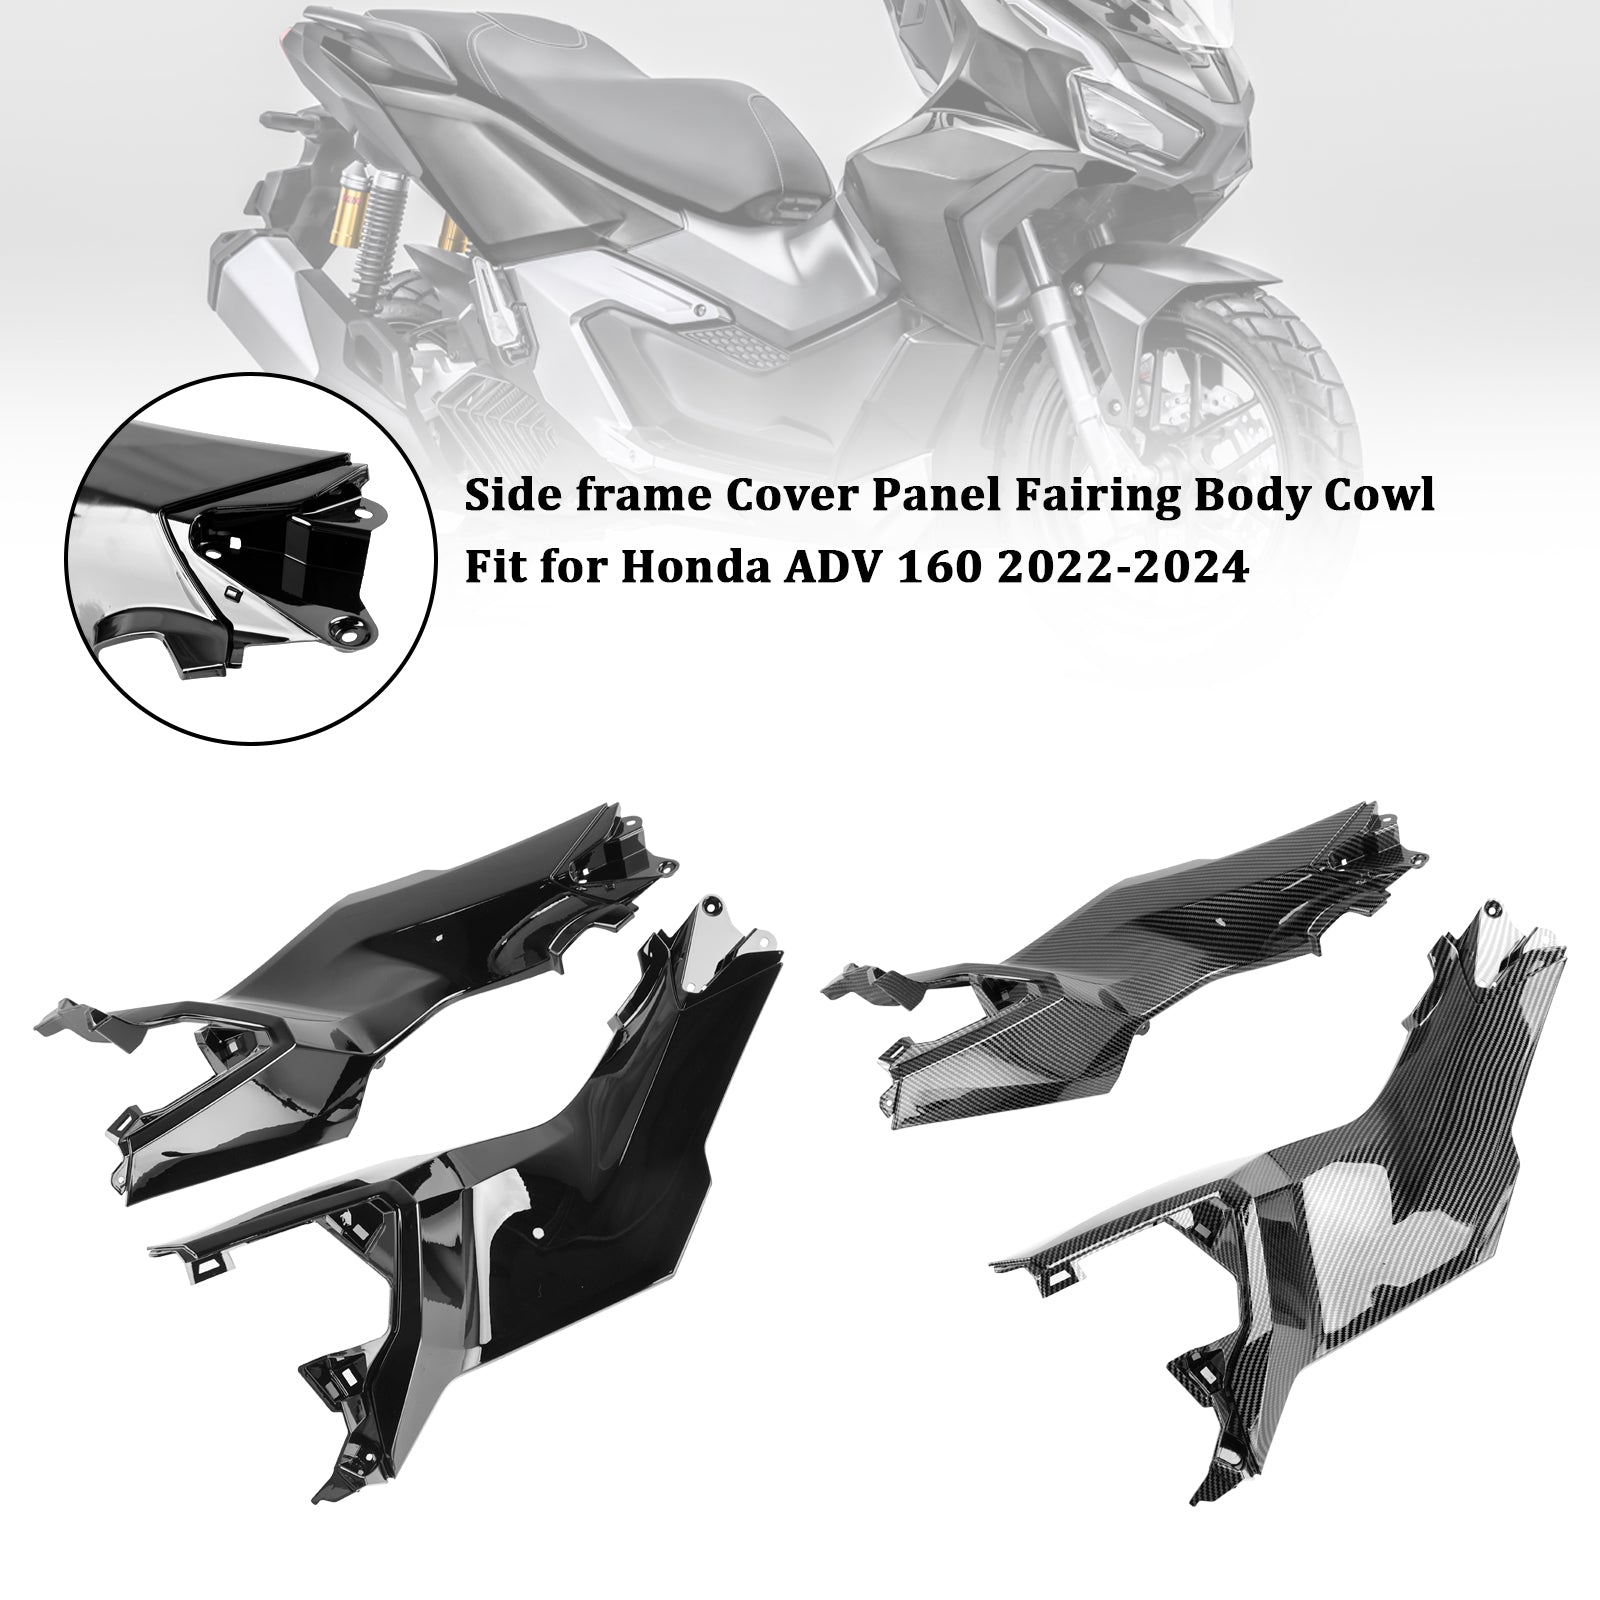 23-24 Honda ADV 160 Side Frame Cover Panel Fairing Body Cowl